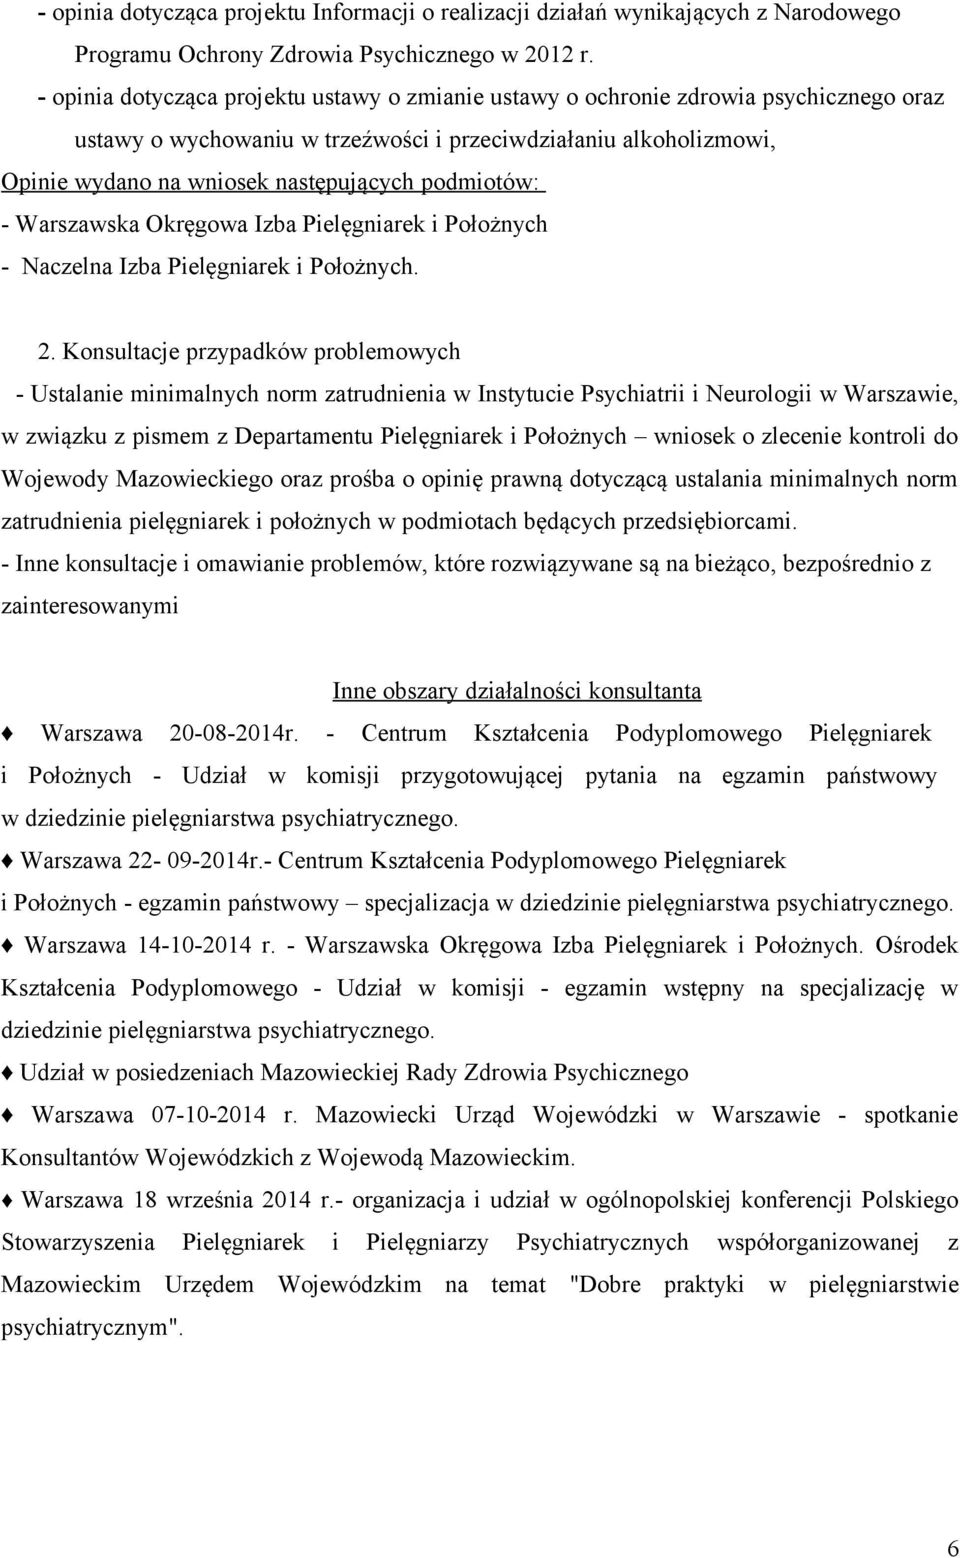 podmiotów: - Warszawska Okręgowa Izba Pielęgniarek i Położnych - Naczelna Izba Pielęgniarek i Położnych. 2.